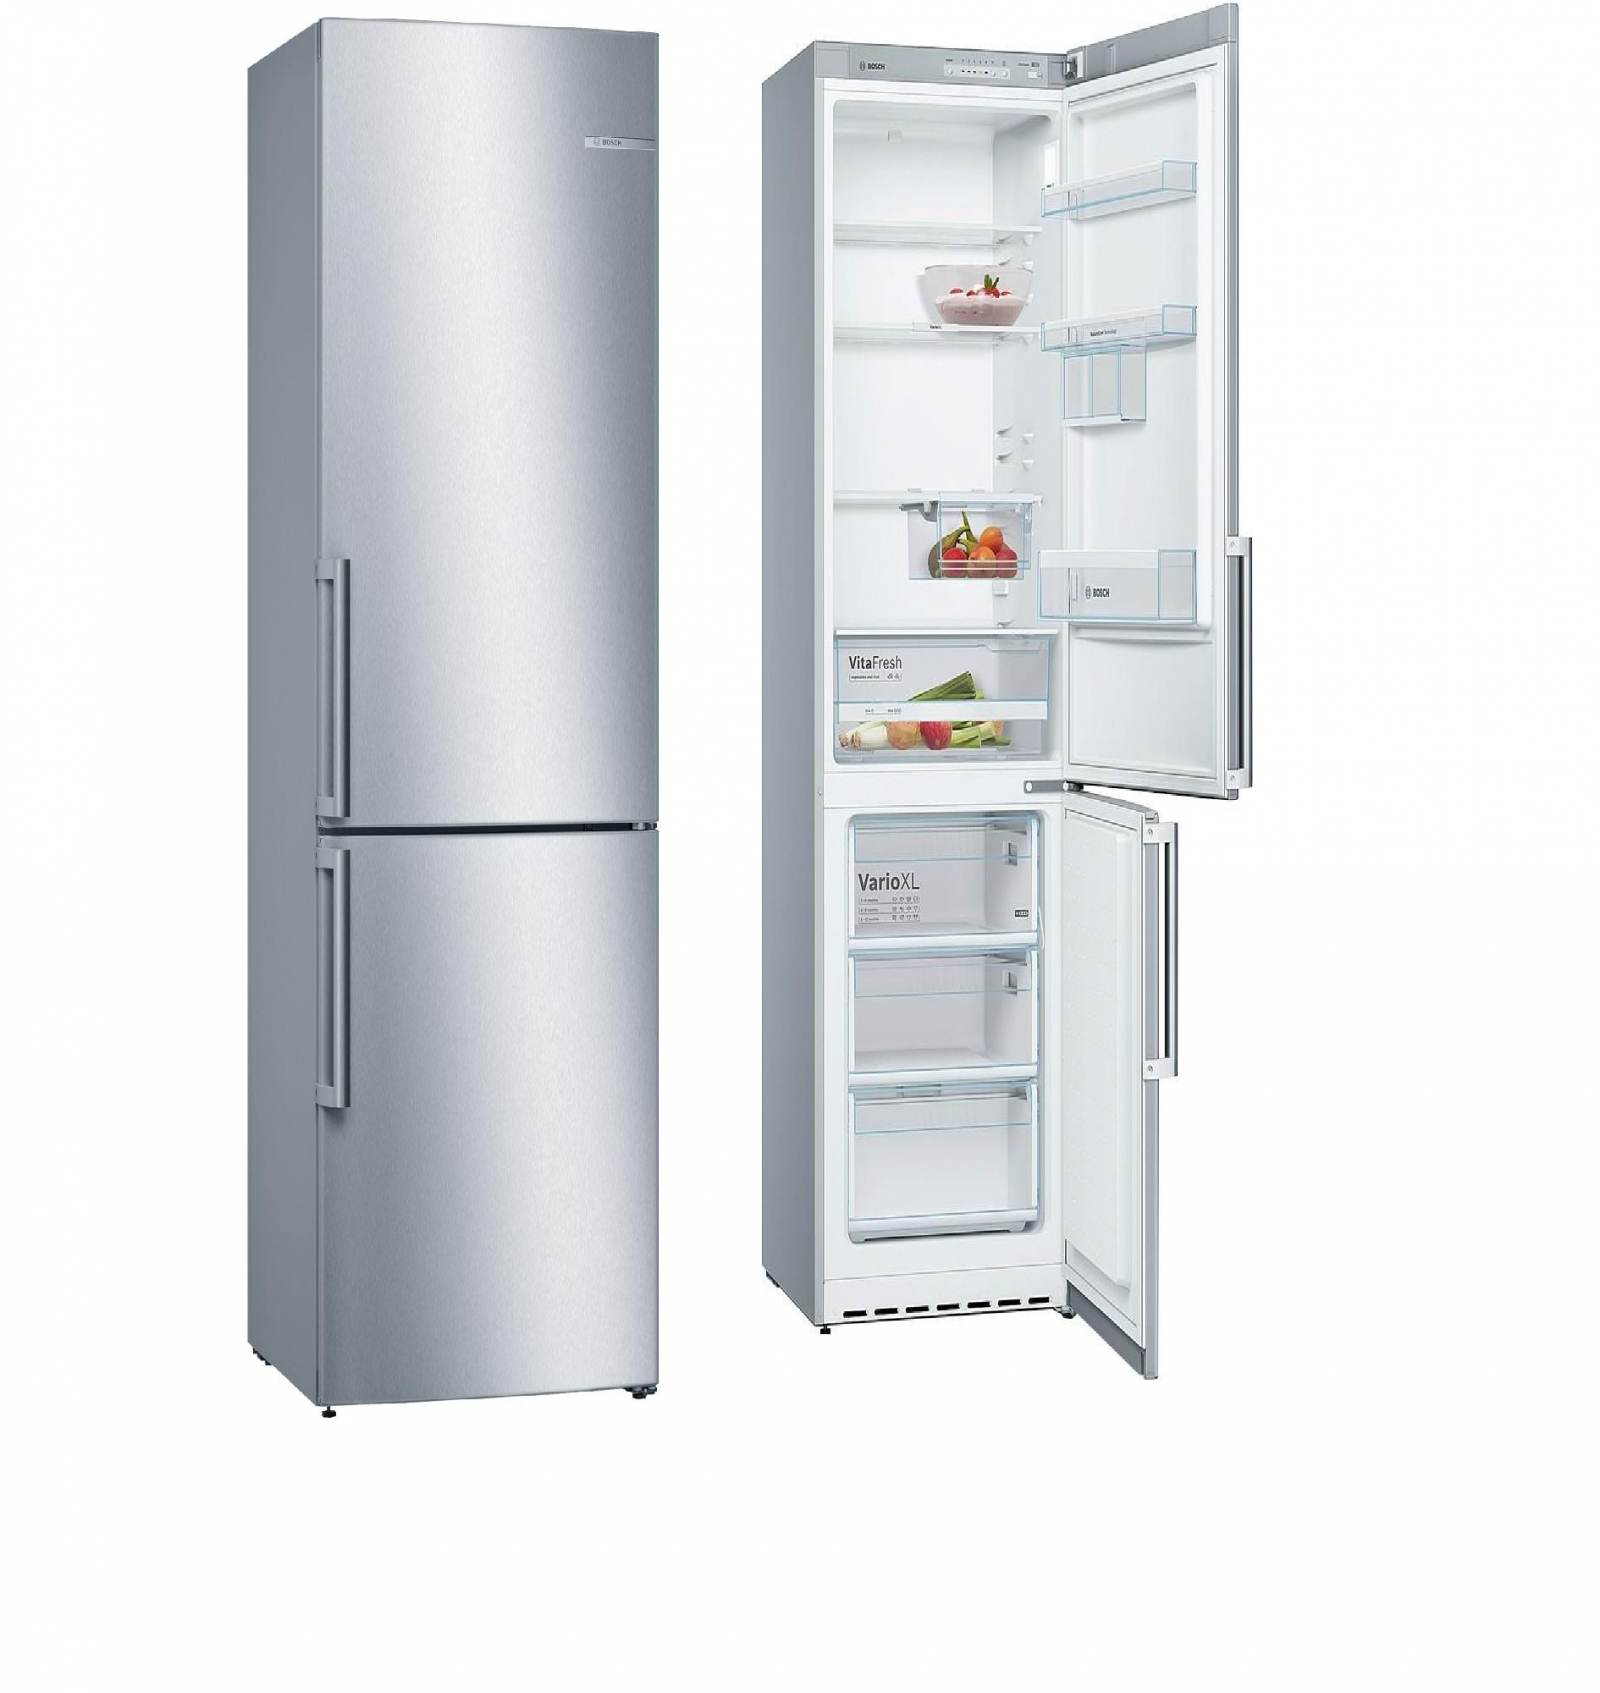 холодильник bosch kgv 36xl2or, купить в Красноярске холодильник bosch kgv 36xl2or,  купить в Красноярске дешево холодильник bosch kgv 36xl2or, купить в Красноярске минимальной цене холодильник bosch kgv 36xl2or